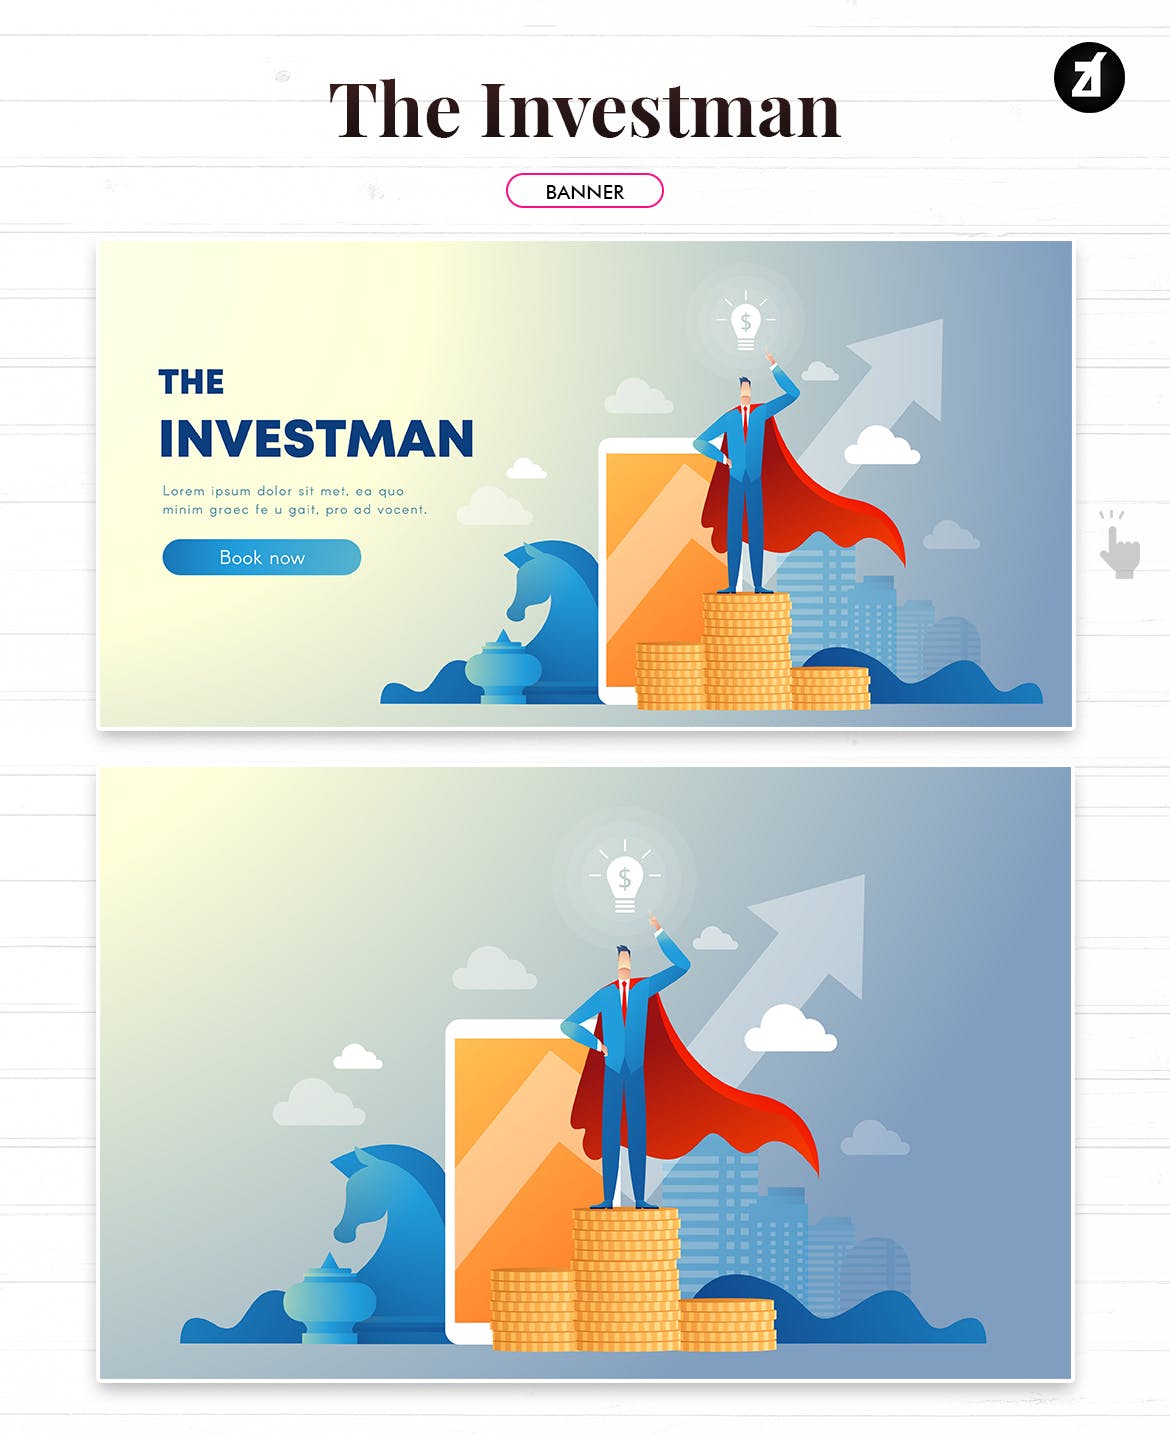 投资者主题矢量非凡图库精选概念插画素材 The investman illustration with text layout插图(2)